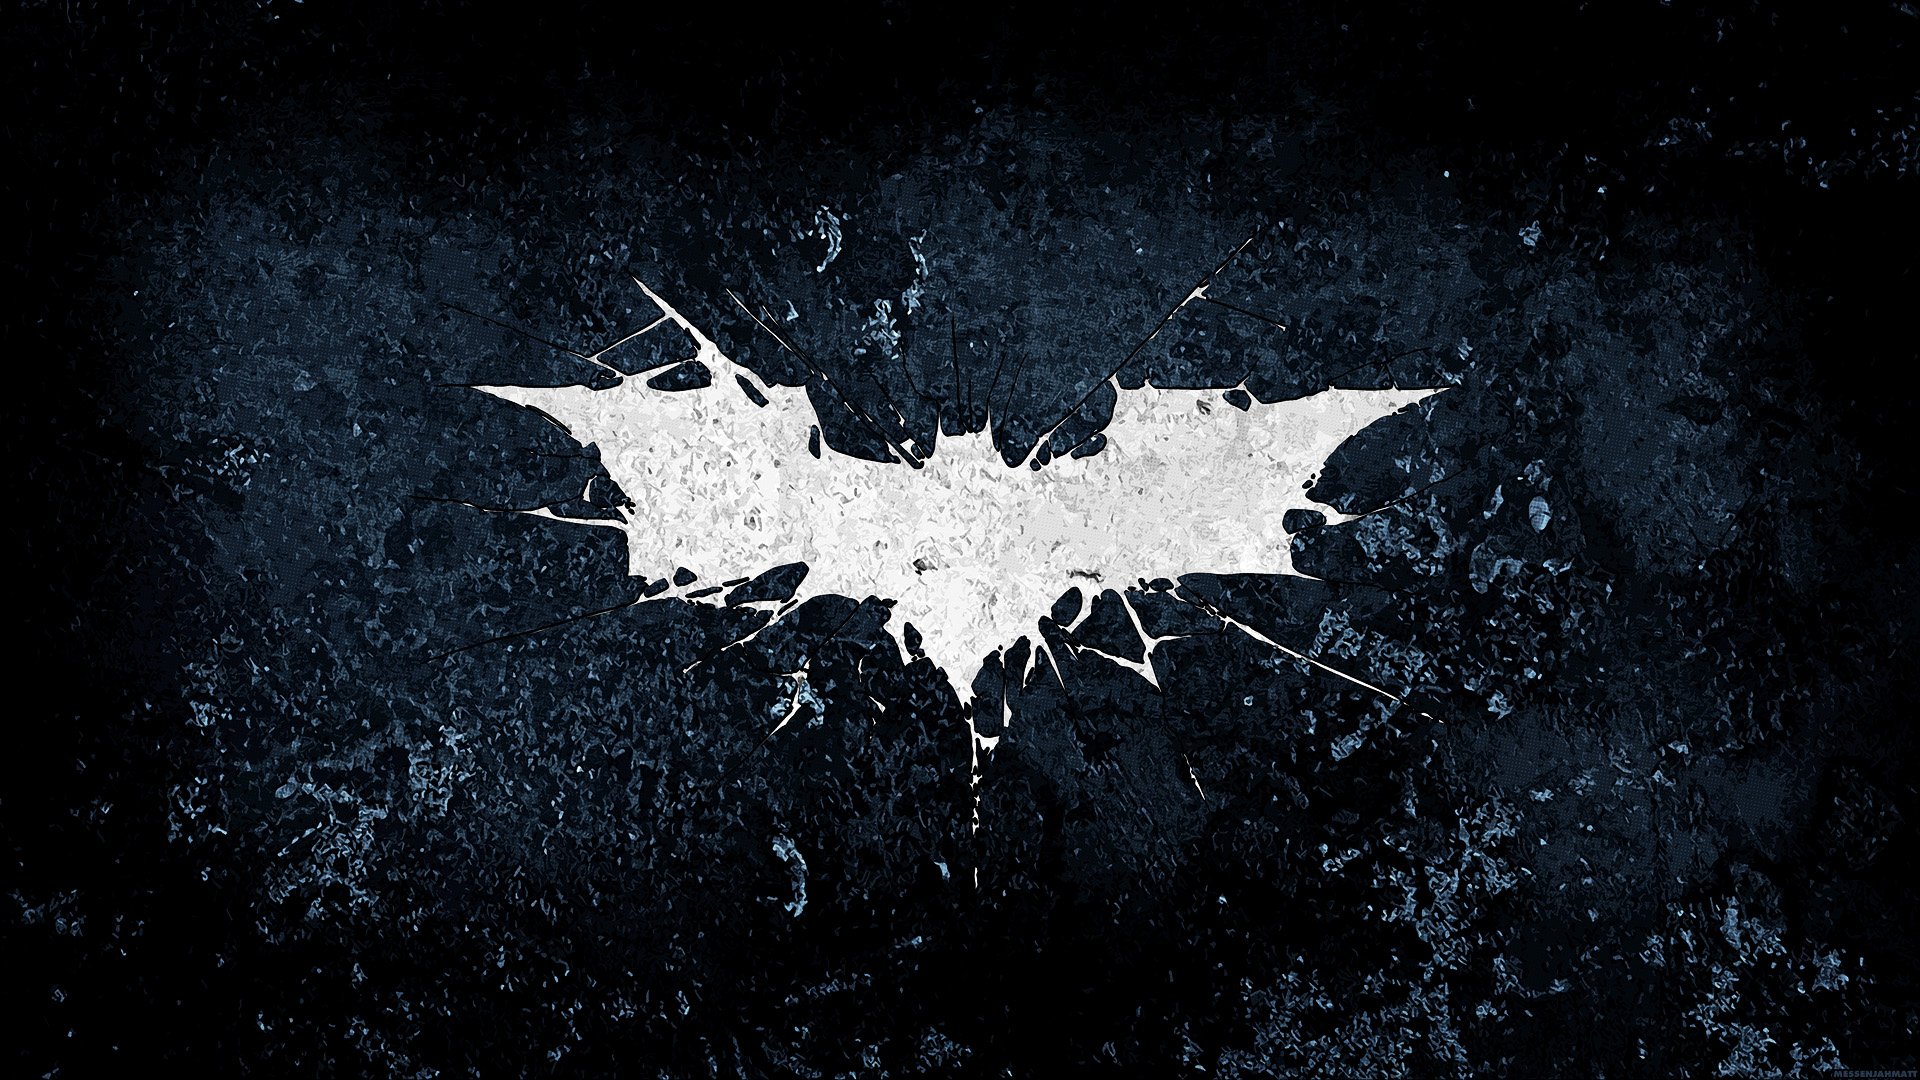 48+] Dark Batman Wallpaper - WallpaperSafari